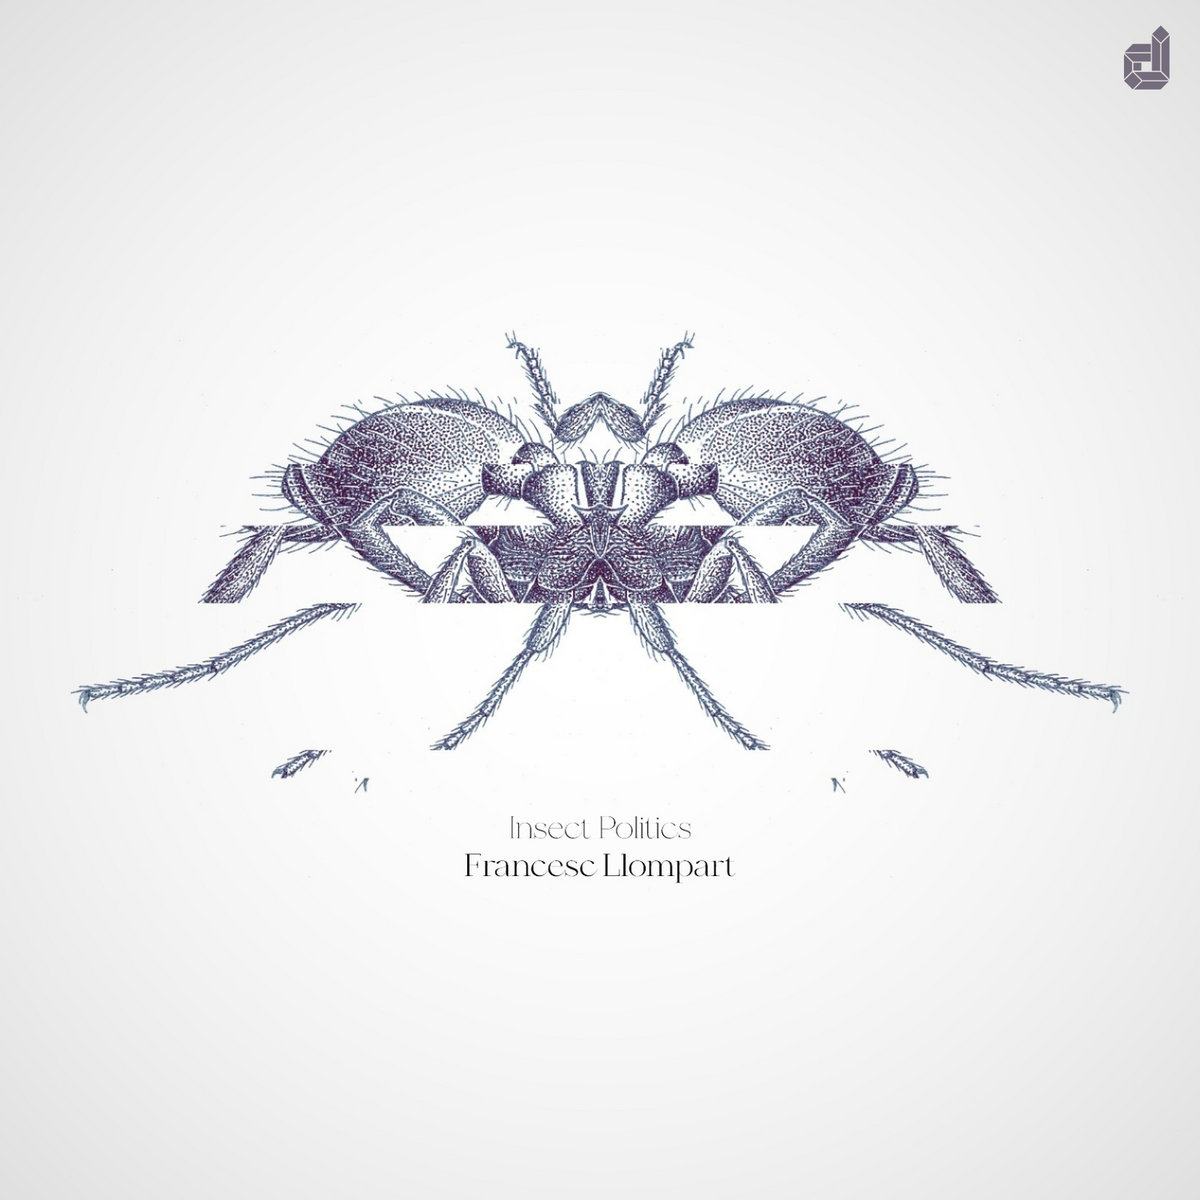 Insect Politics – Francesc Llompart